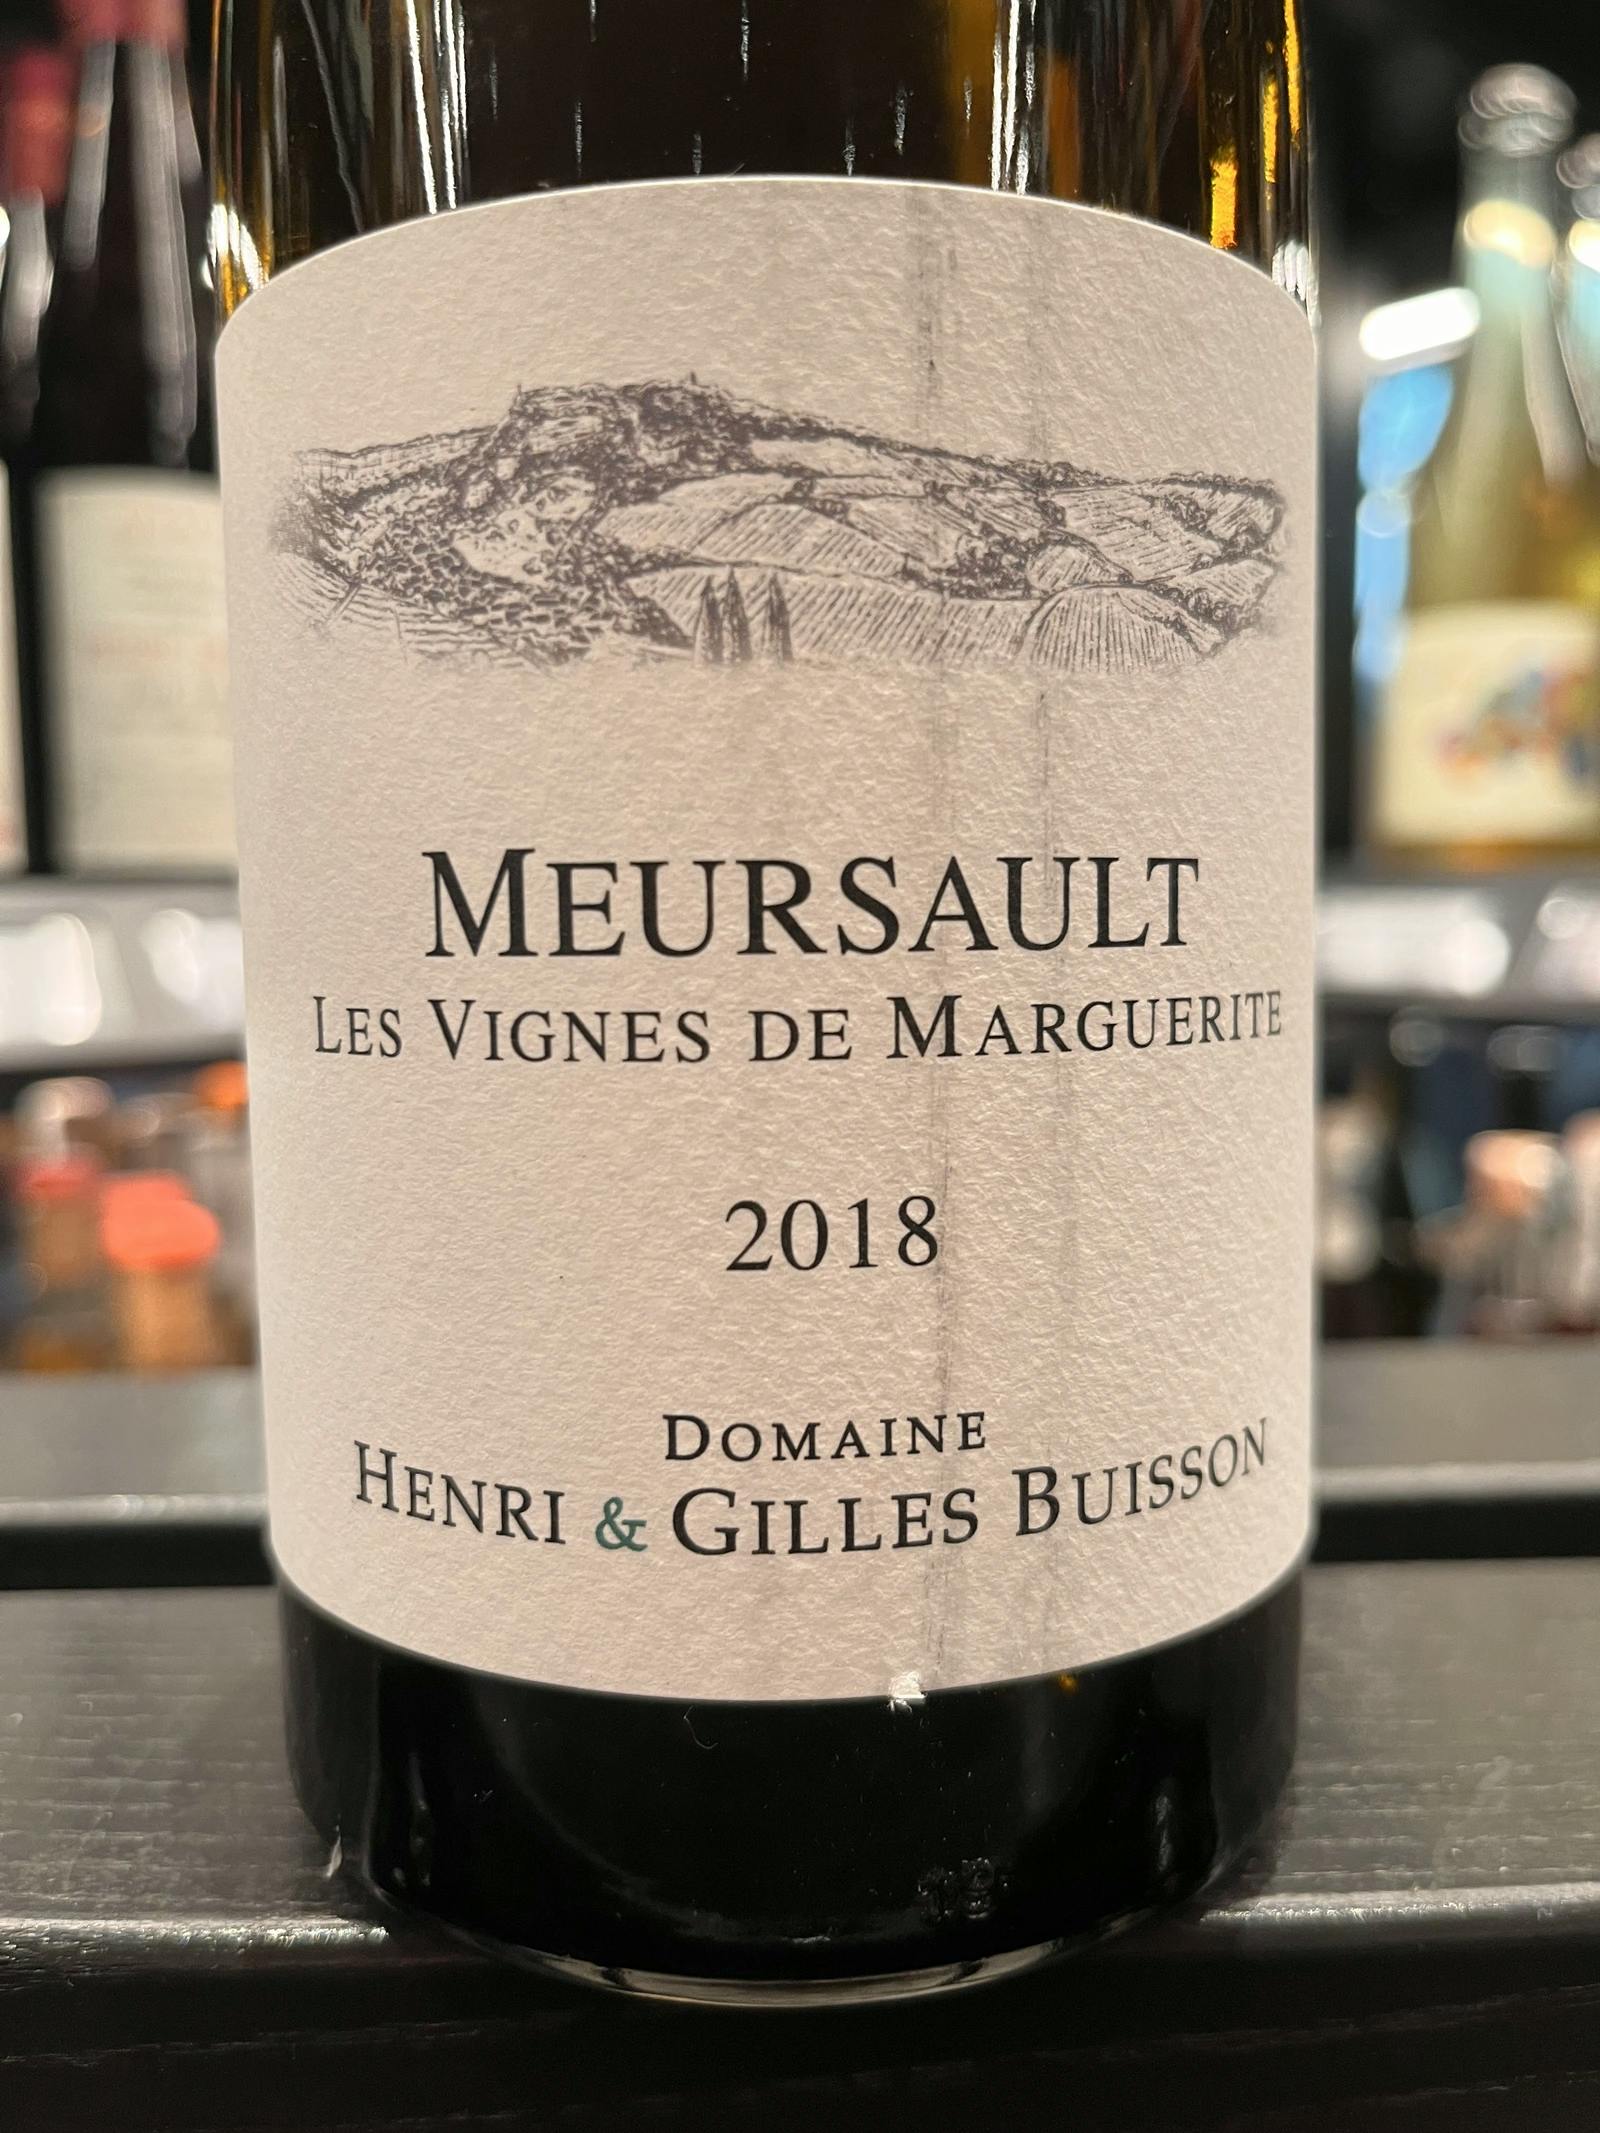 Henri & Gilles Buisson Meursault Les Vignes de Marguerite 2018